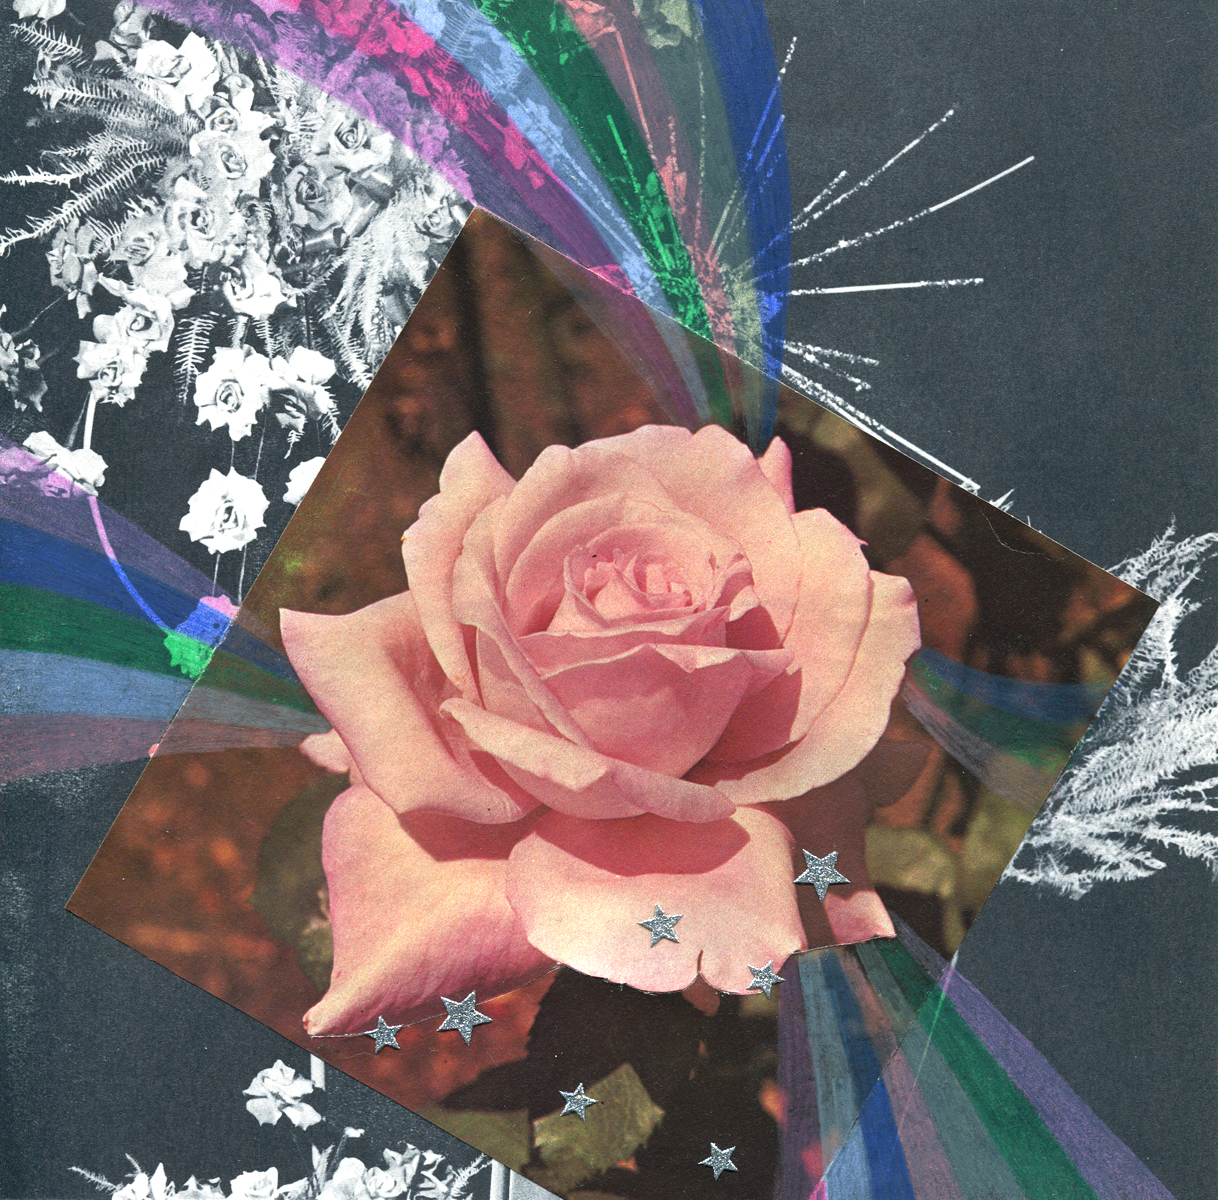 Rainbow Rose Garden #7, collage, found paper, pencil